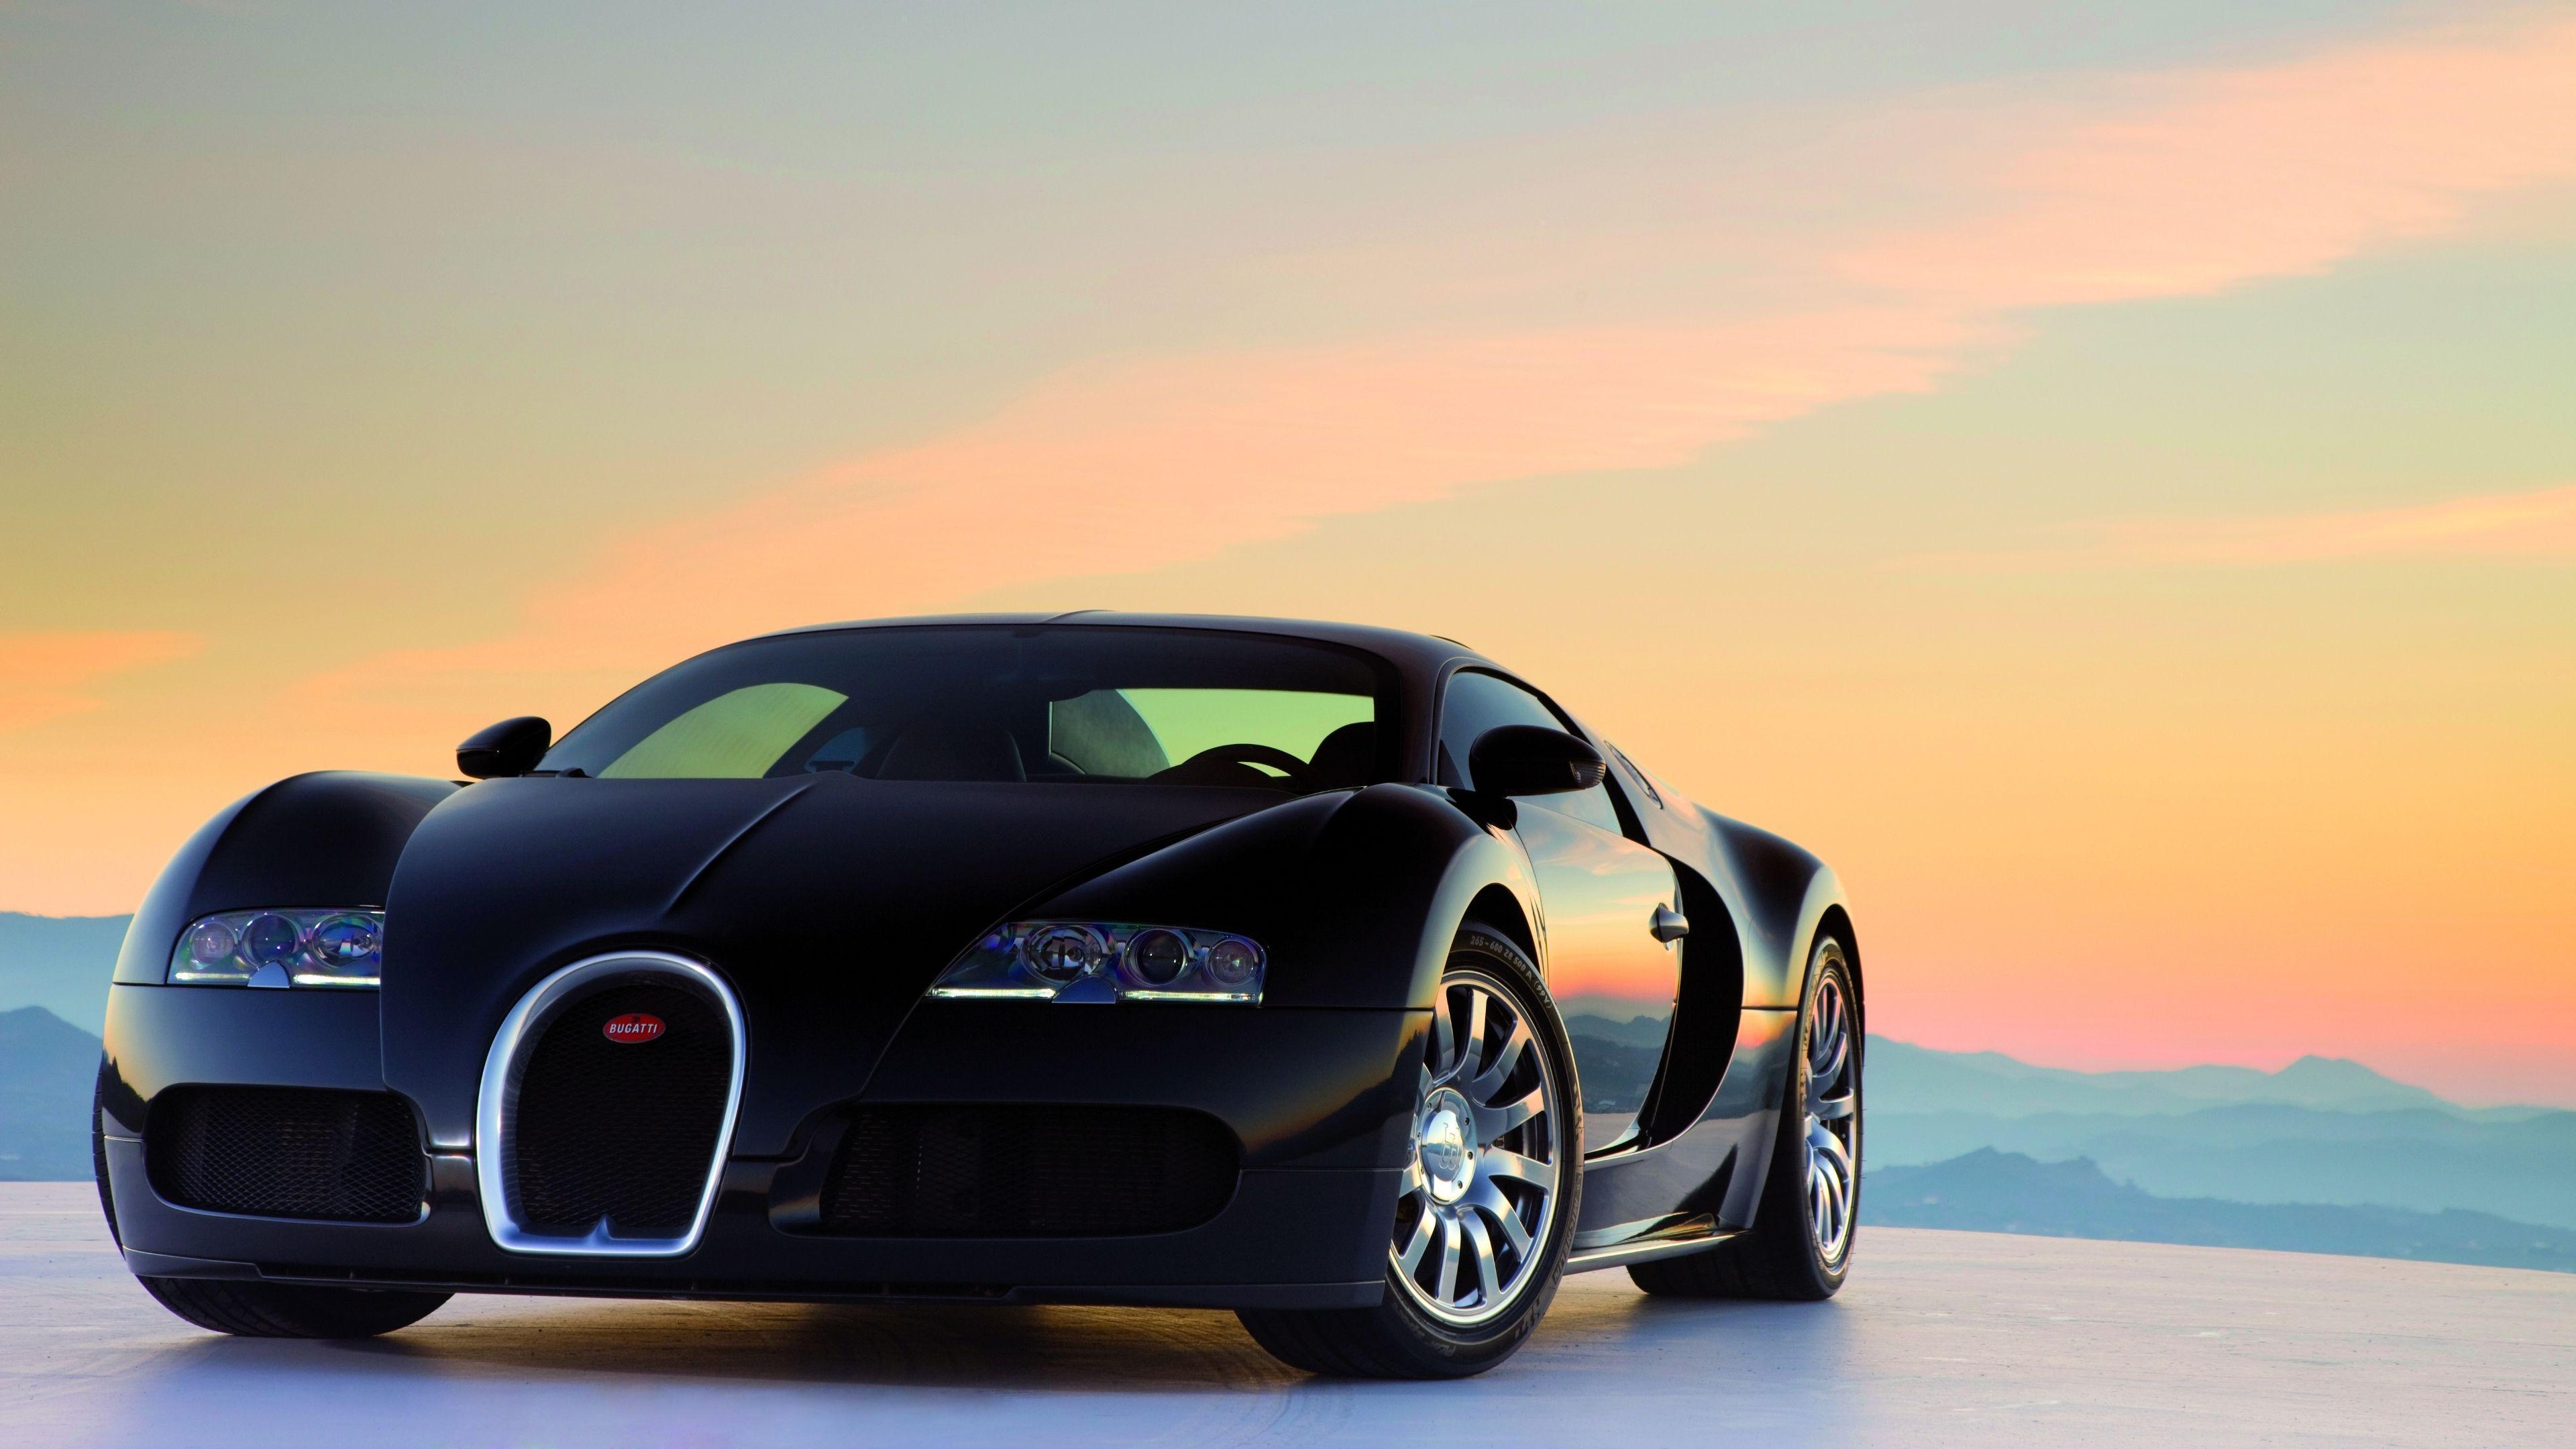 Bugatti Veyron HD Wallpaper and Background Image